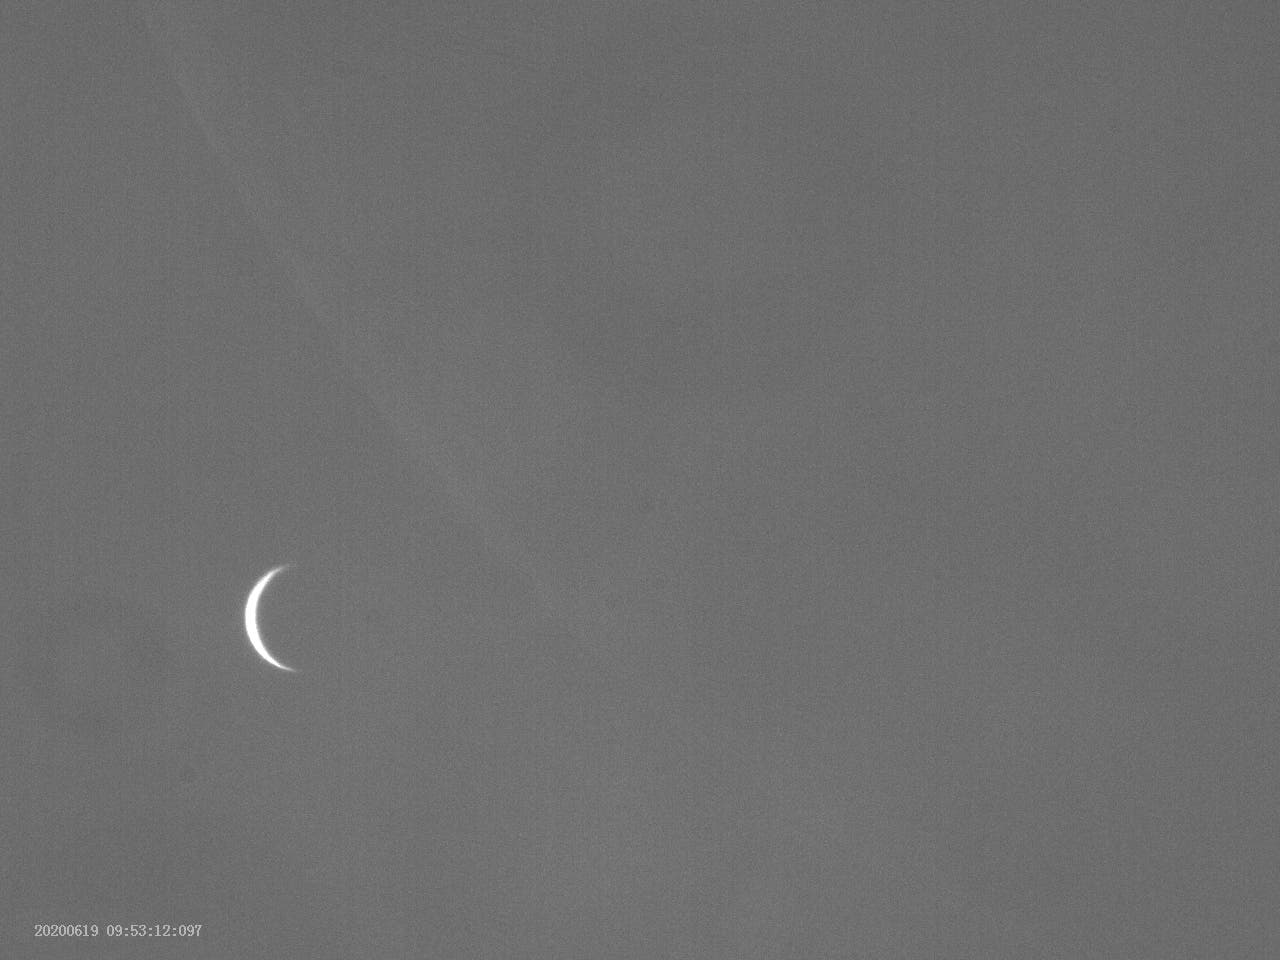 Venus-Bedeckung durch den Mond am 19. Juni 2020 - kurz vor der Bedeckung